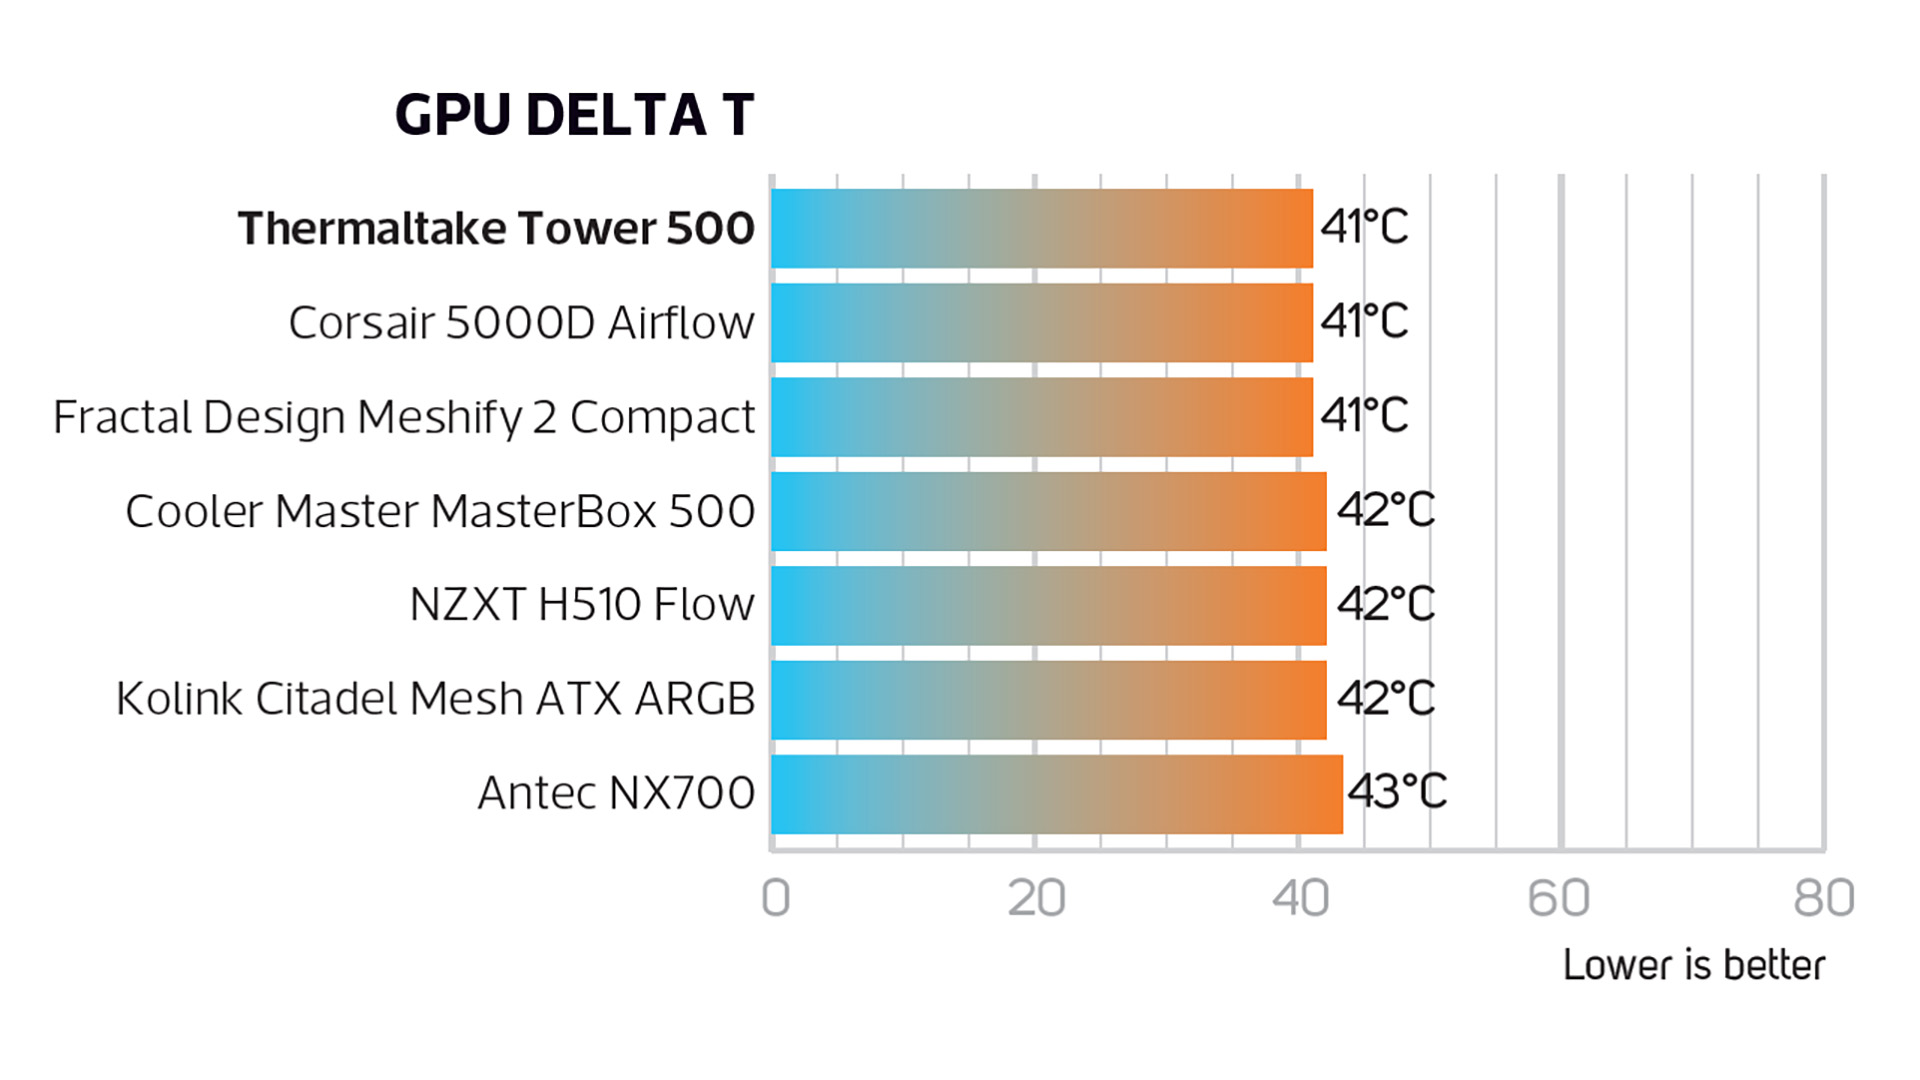 Image d'examen du Thermaltake Tower 500 montrant les résultats de température du GPU par rapport à d'autres modèles.  Il indique 41 degrés, ce qui est la température la plus basse commune.